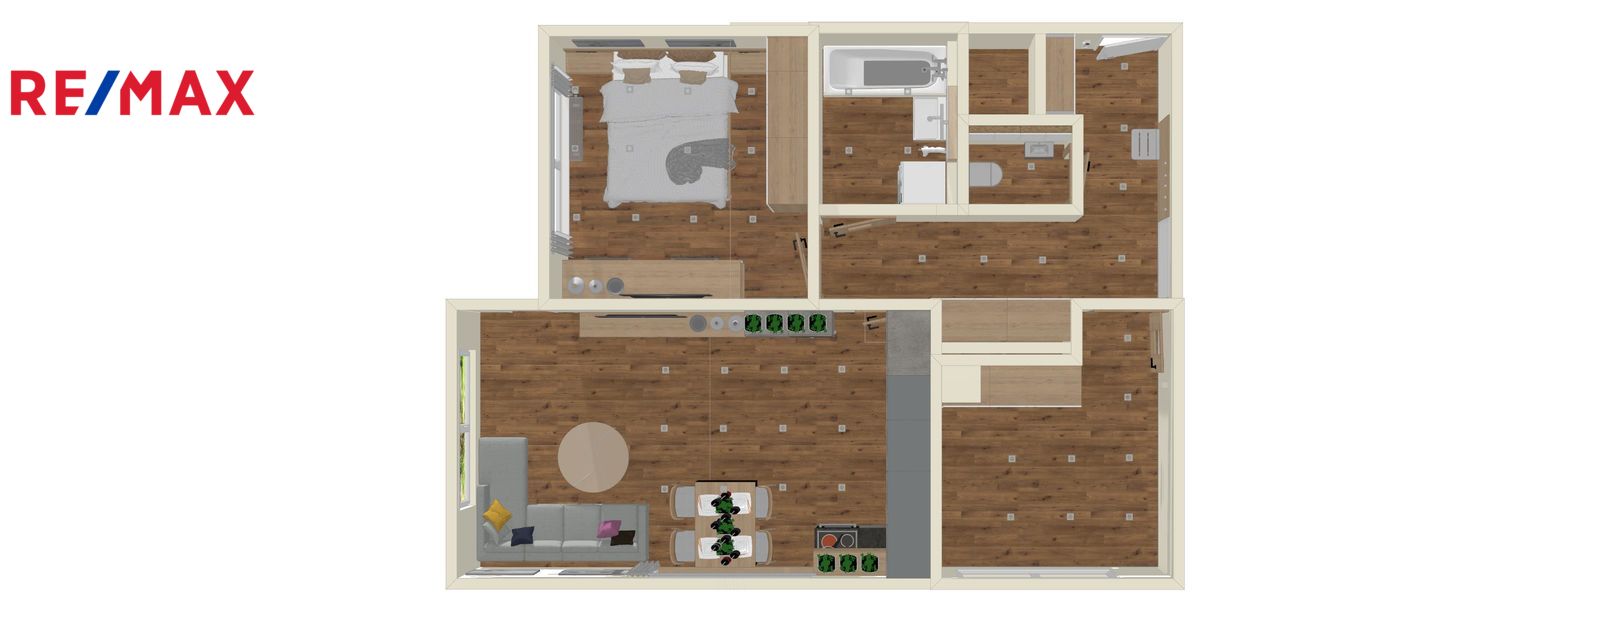 Pronájem zařízeného bytu 3kk 65m² v novostavbě s lodžií 5m², sklepem a garáží v Praze 9 – Strašicích